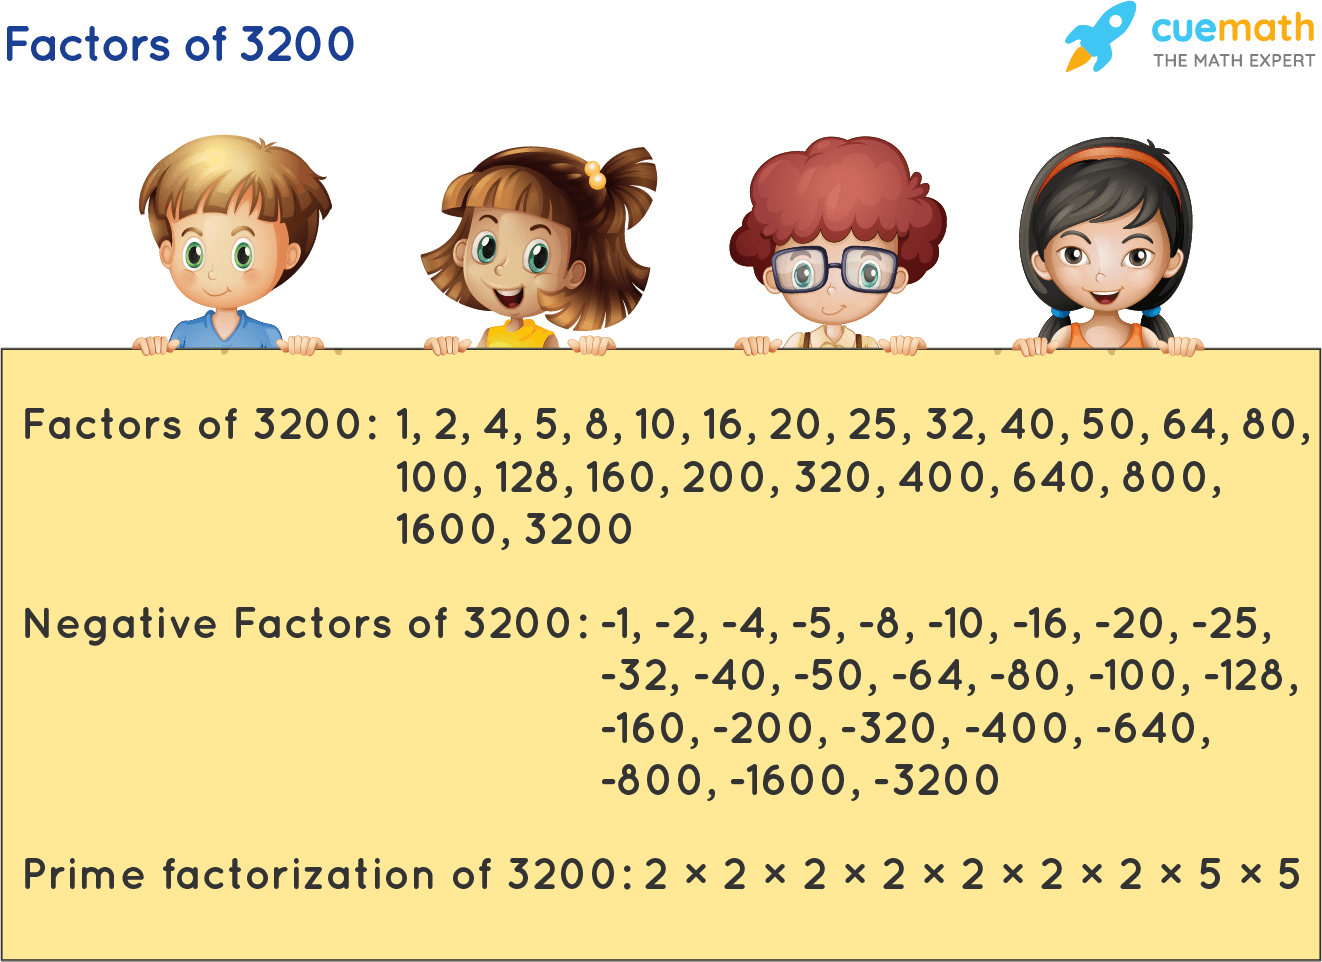 Factors of 3200